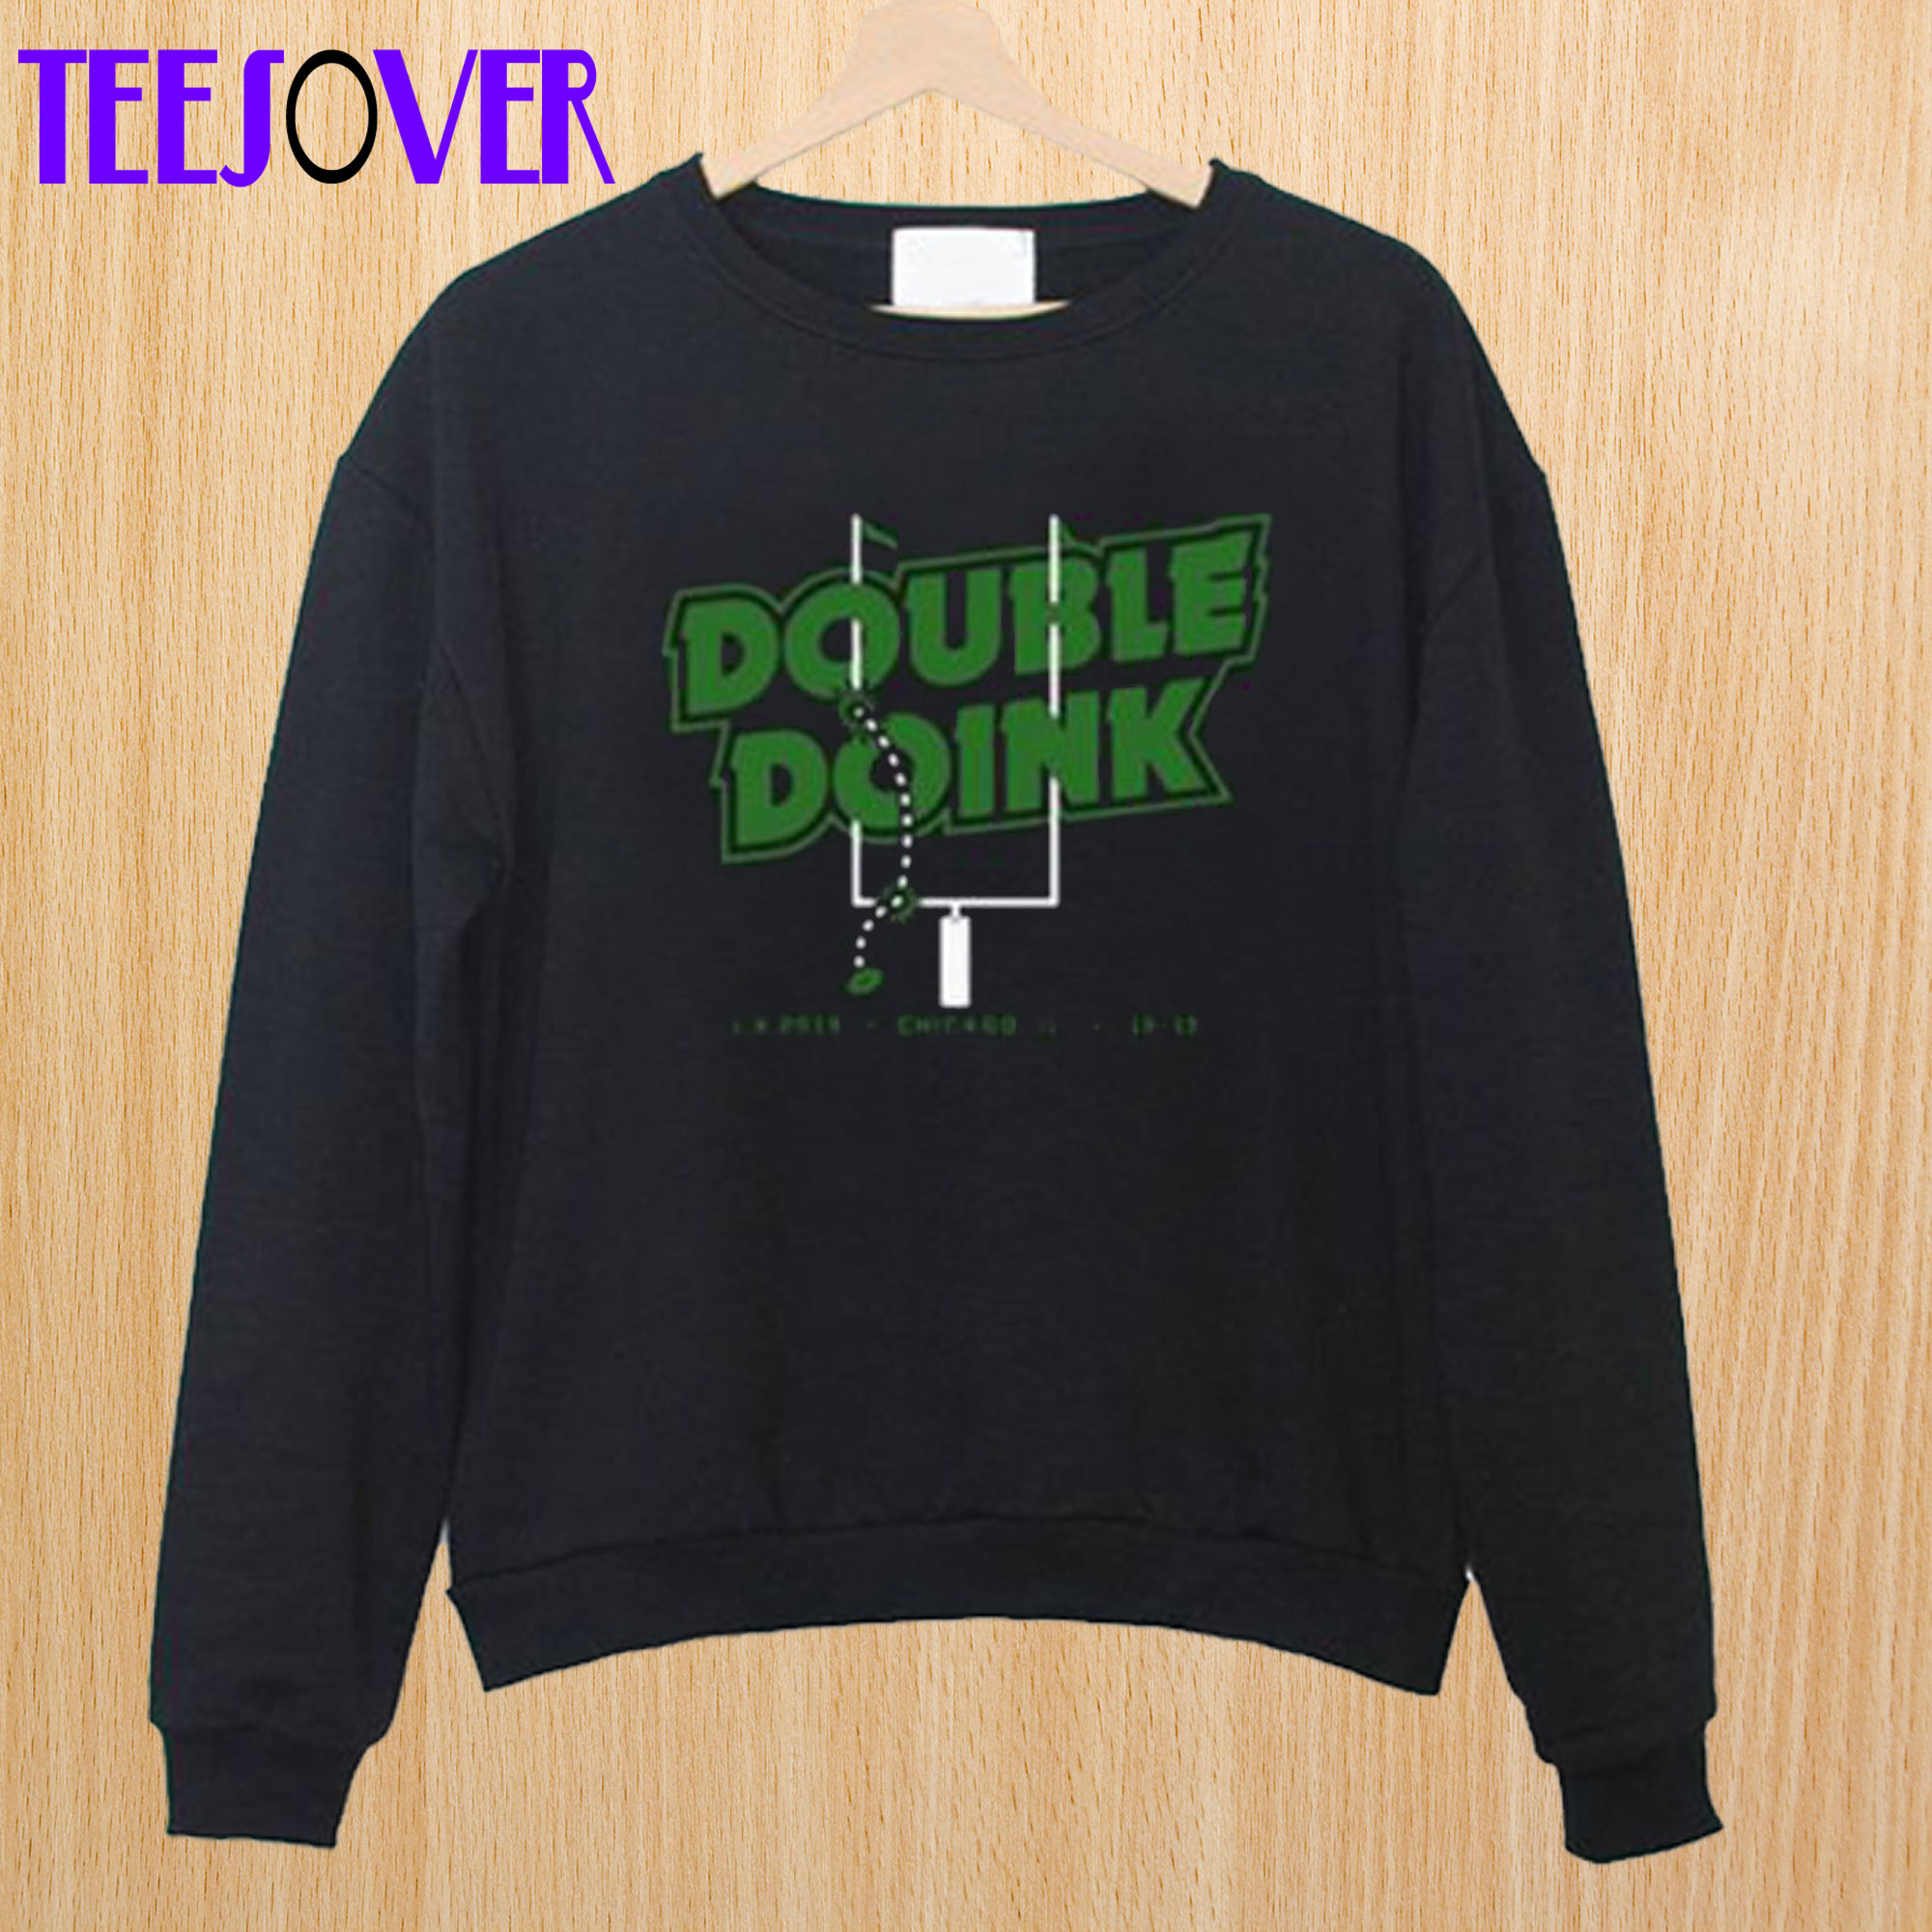 Double Doink Sweatshirt